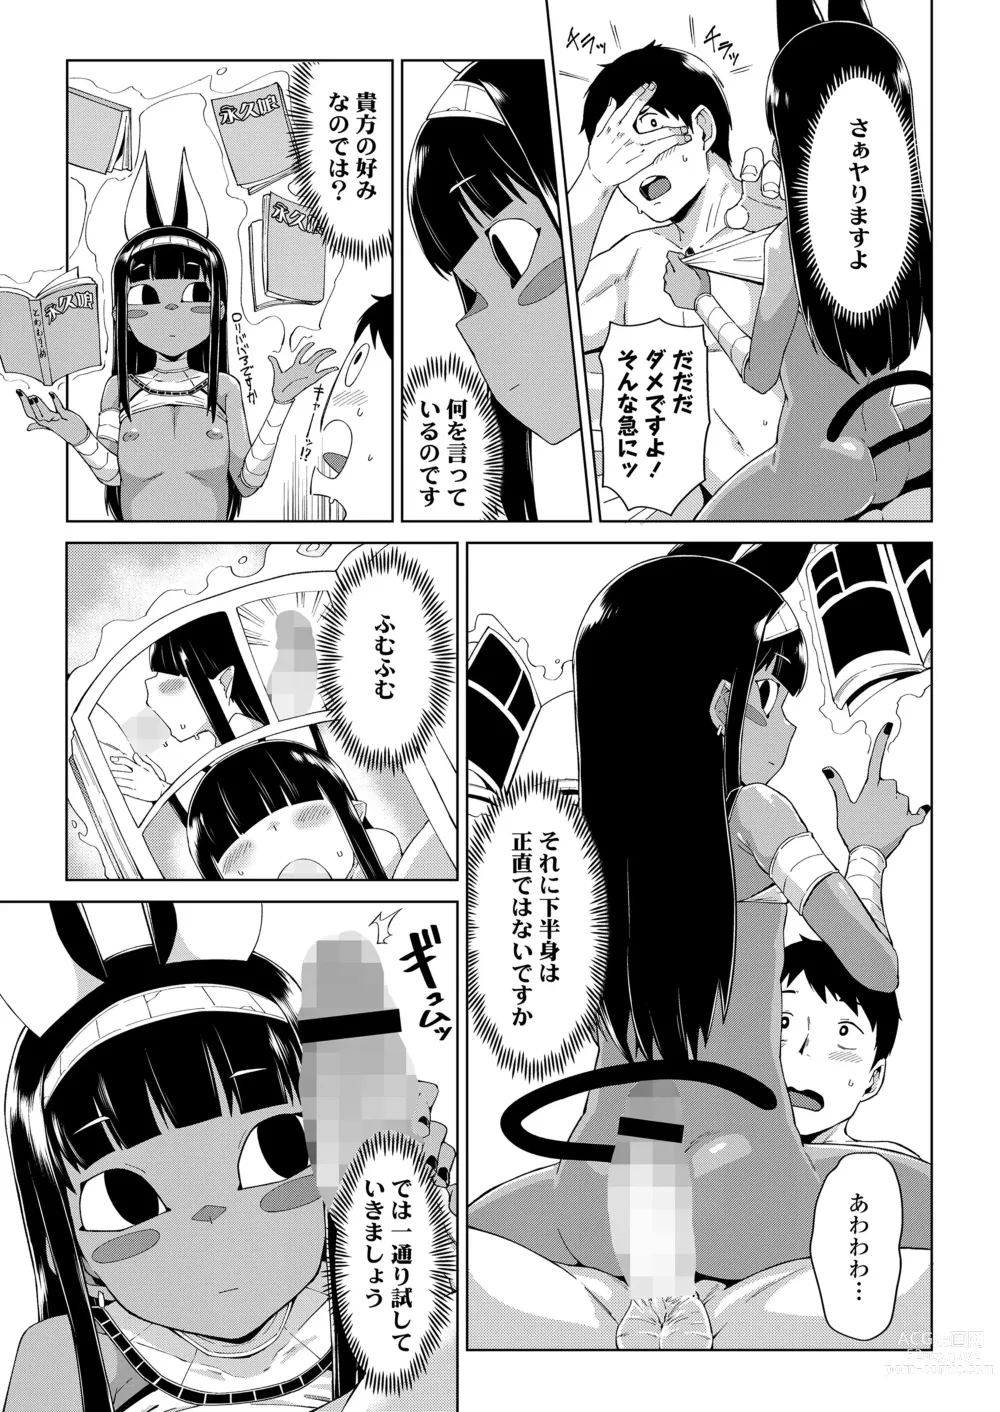 Page 9 of manga Towako Oboro Emaki 13